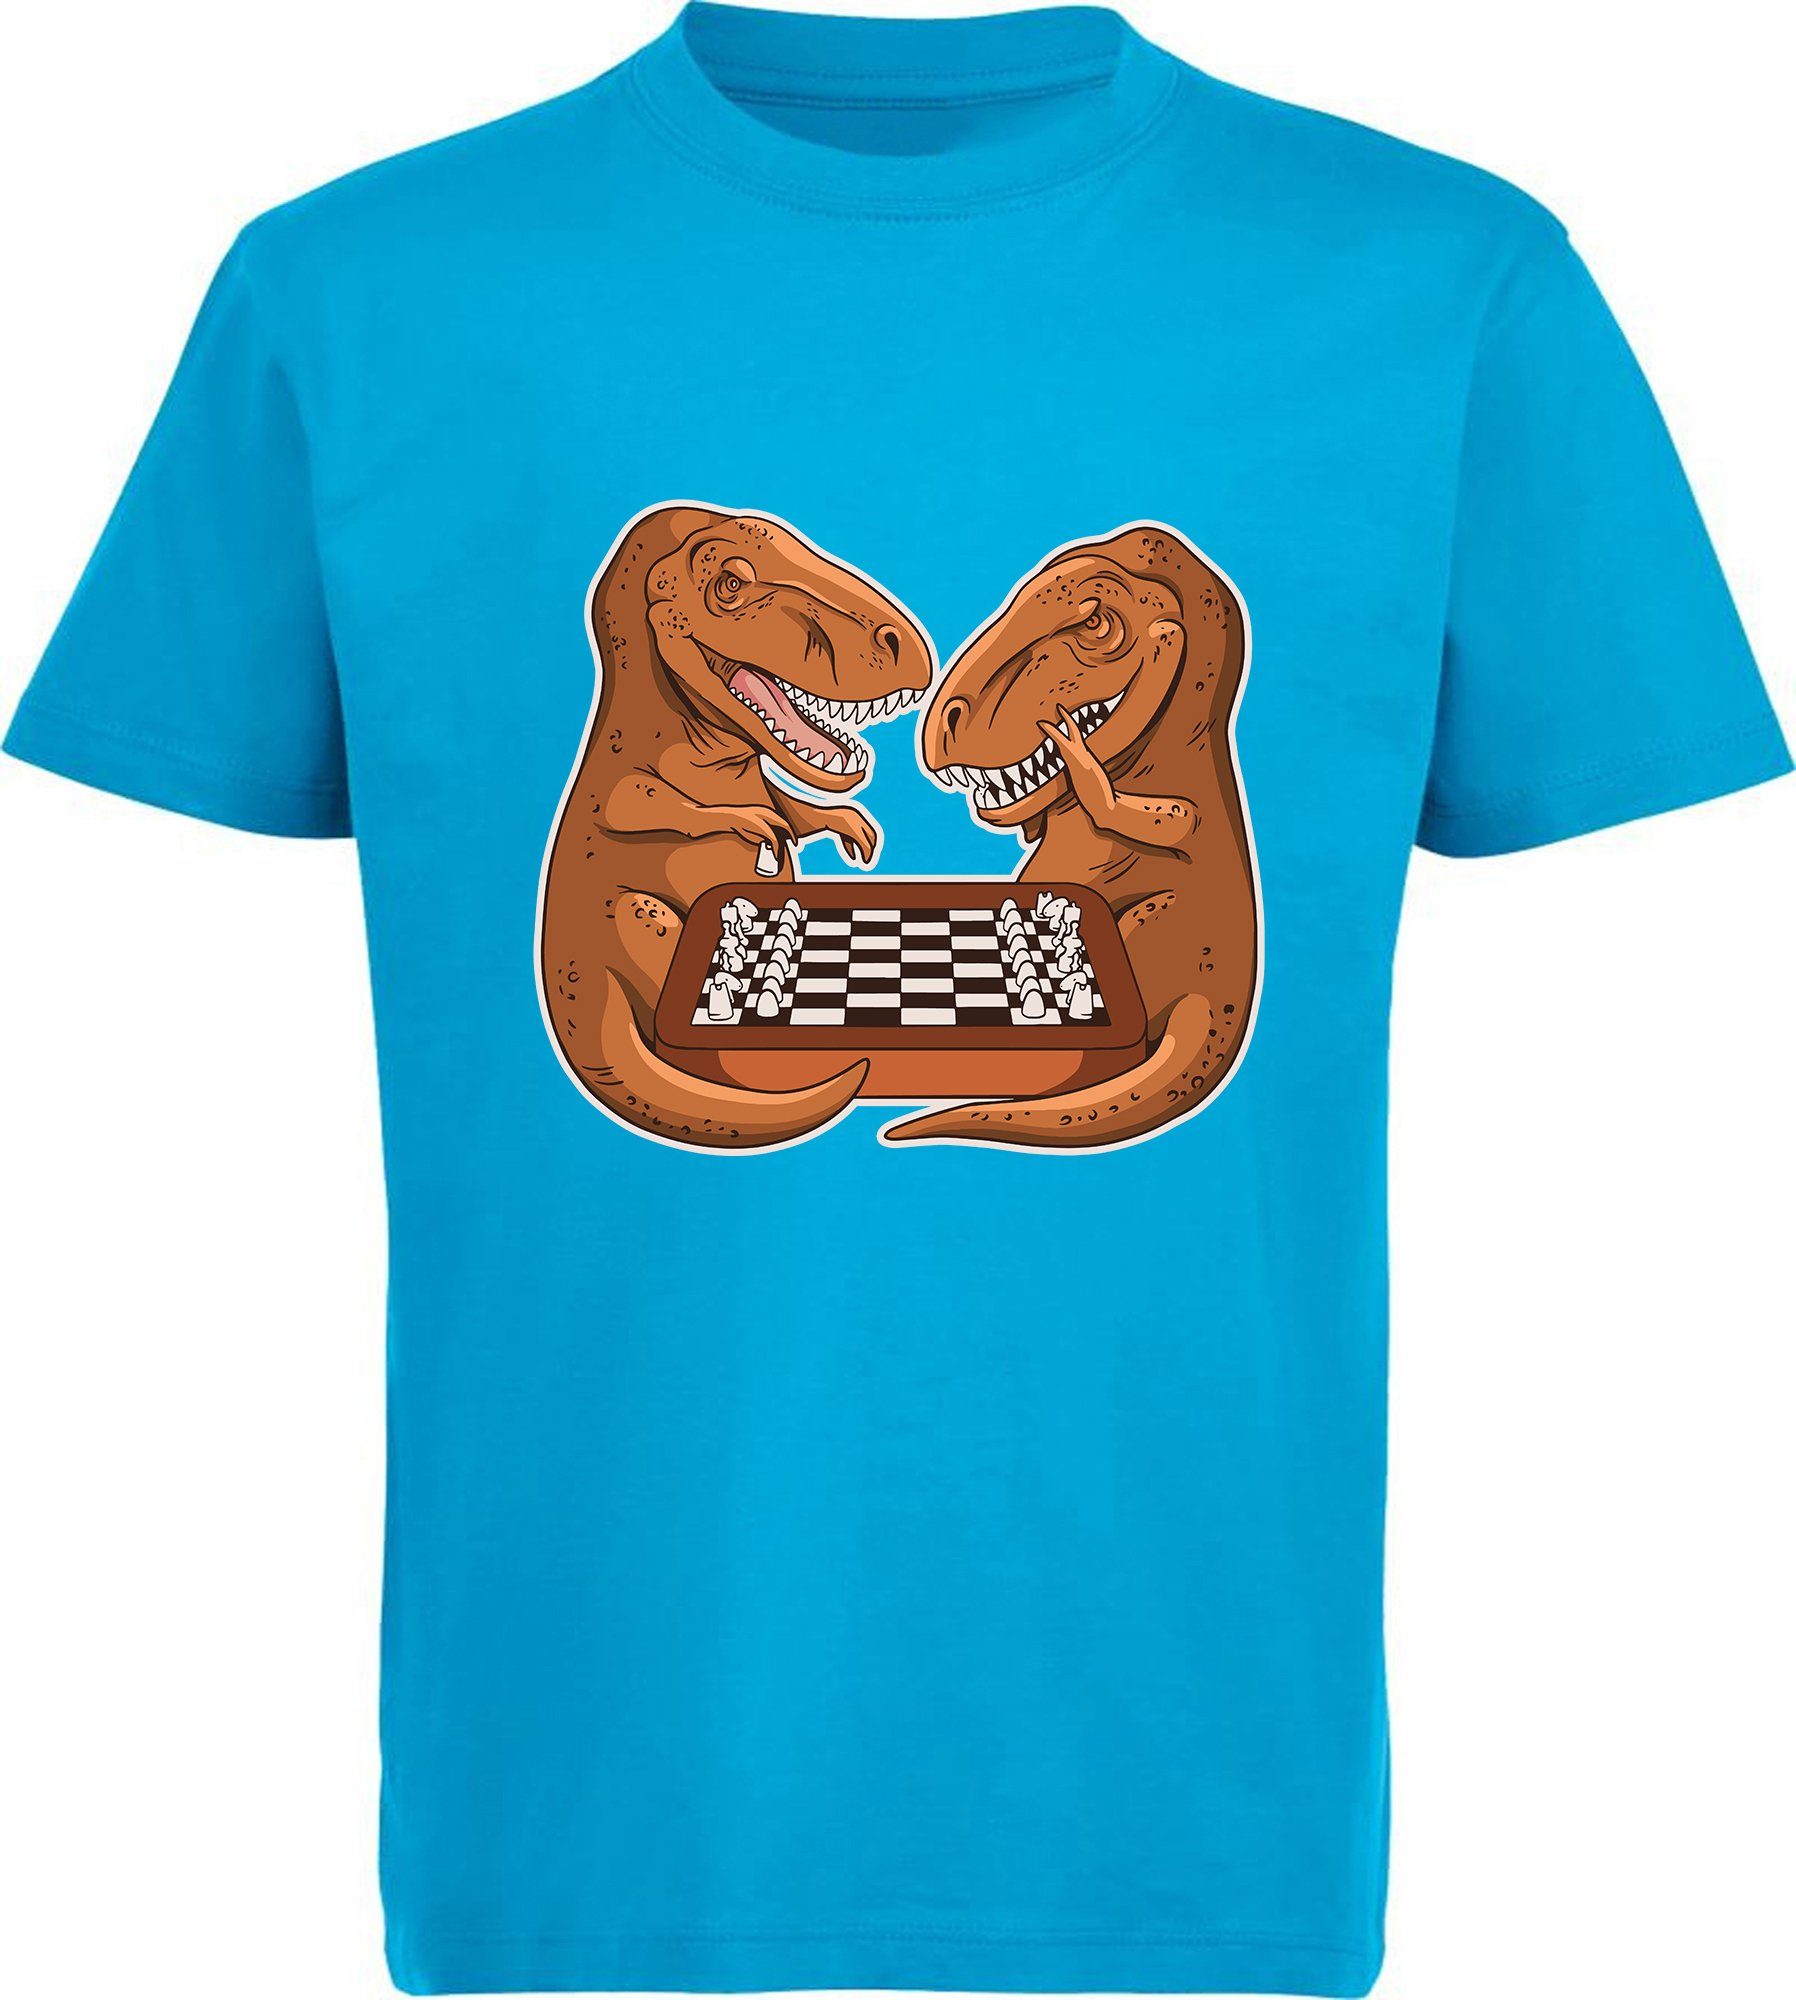 MyDesign24 Print-Shirt bedrucktes Kinder T-Shirt mit T-Rex beim Schach Baumwollshirt mit Dino, schwarz, weiß, rot, blau, i67 aqua blau